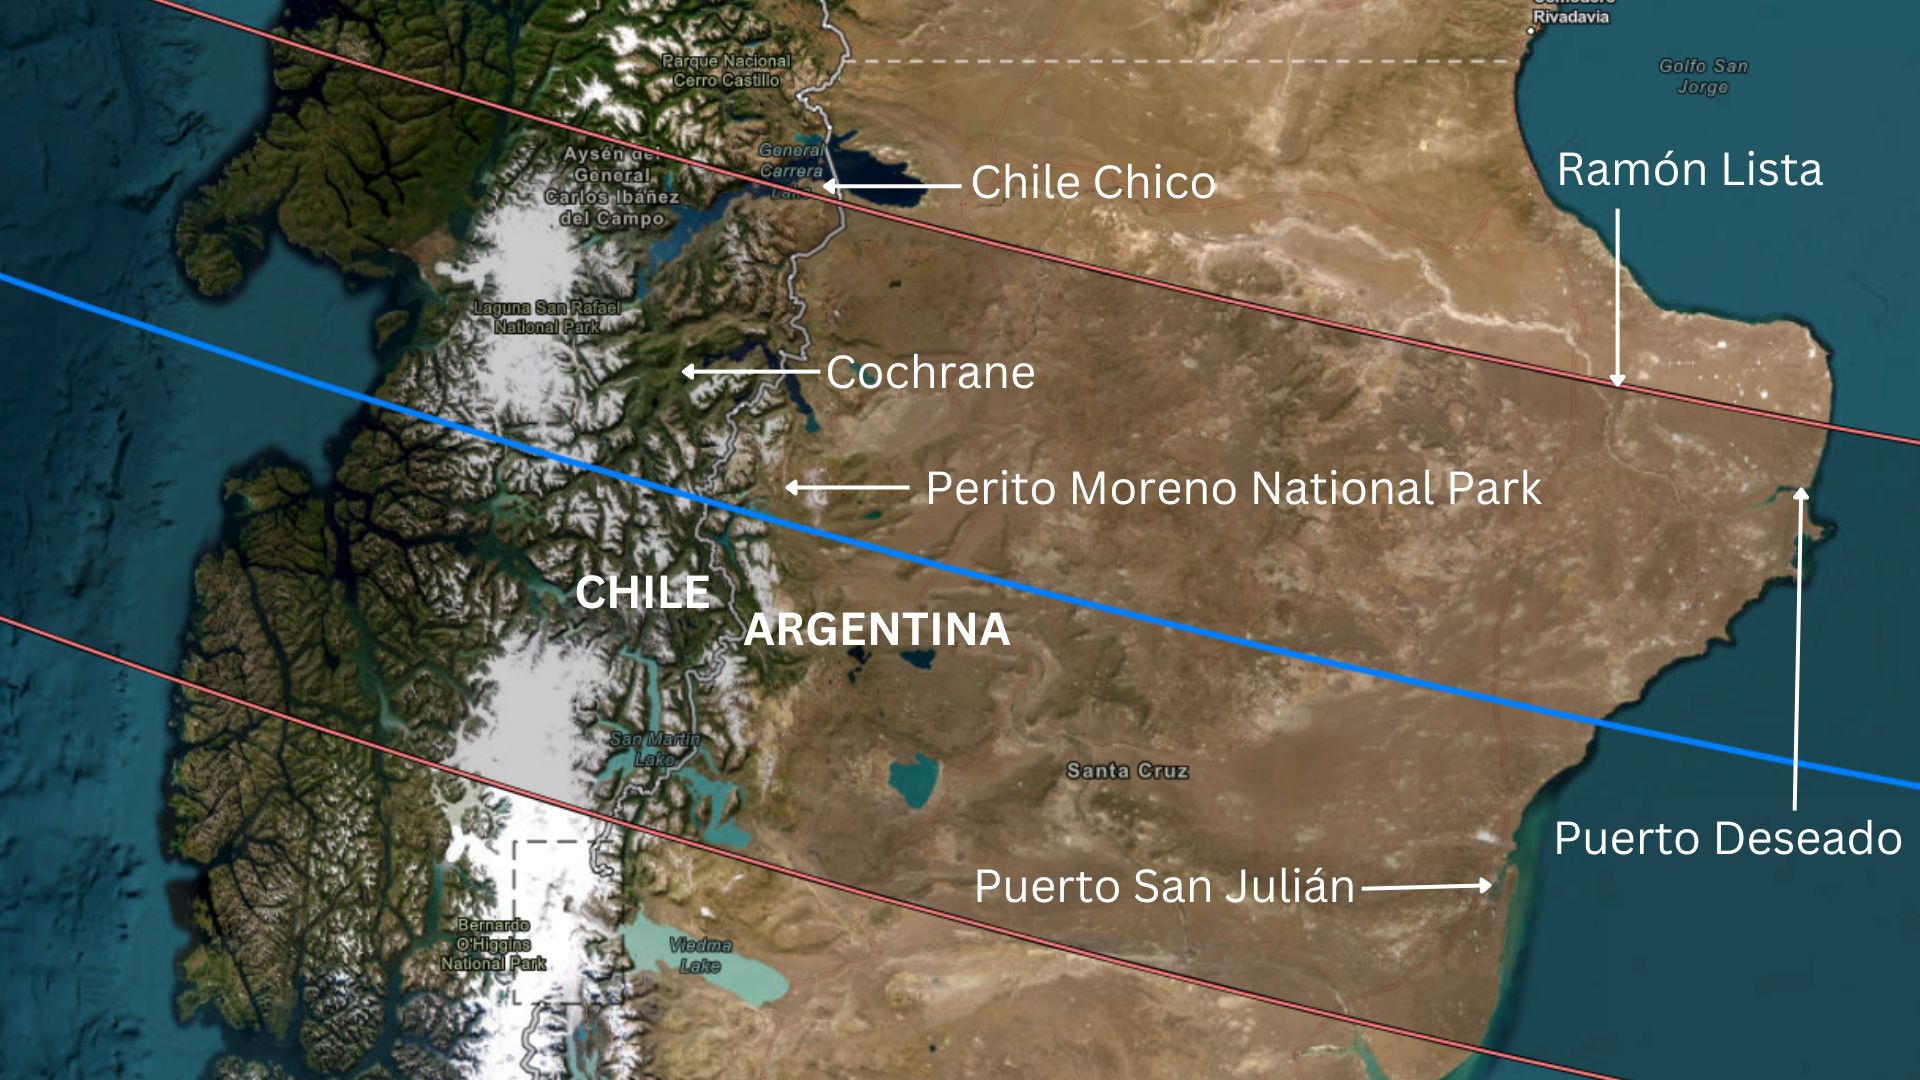 Mapa de América del Sur, que muestra la ruta del circuito que pasa por partes de Chile y Argentina.